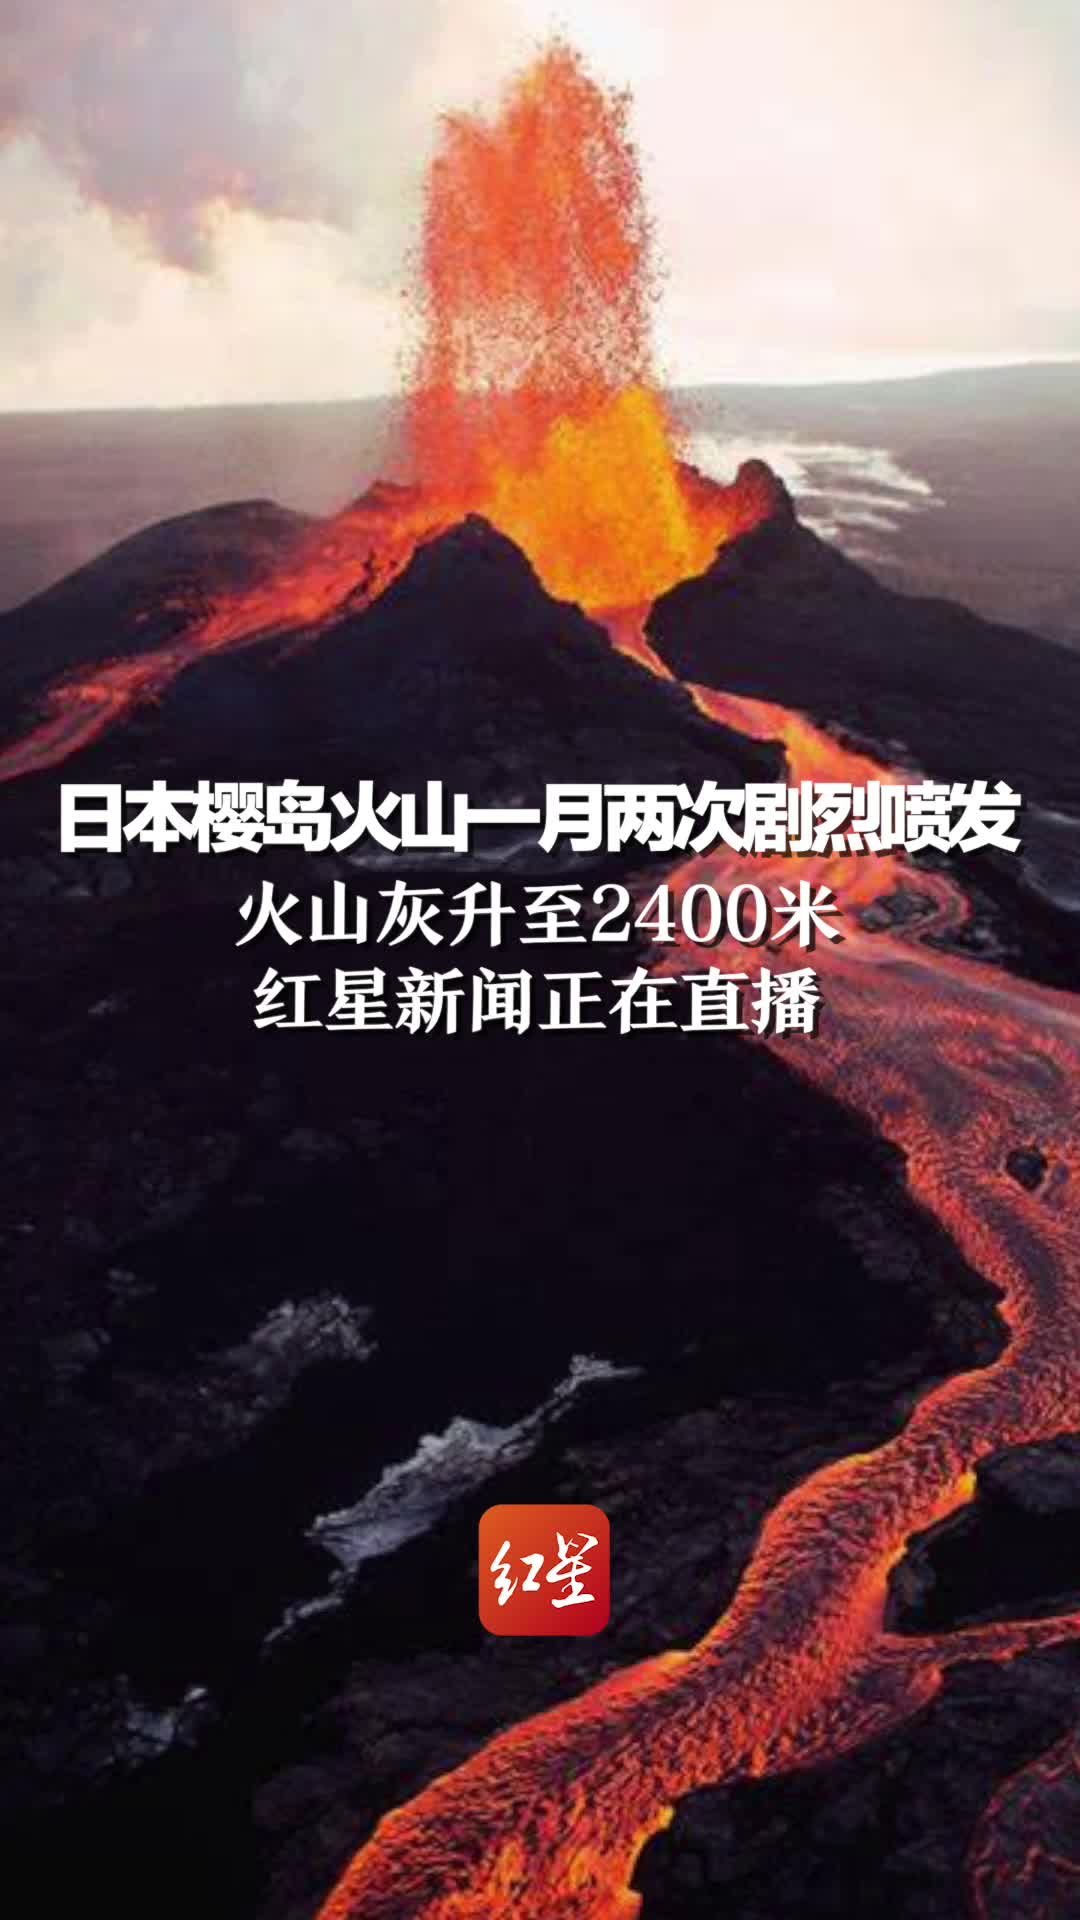 日本樱岛火山一月两次剧烈喷发 火山灰升至2400米，红星新闻正在直播